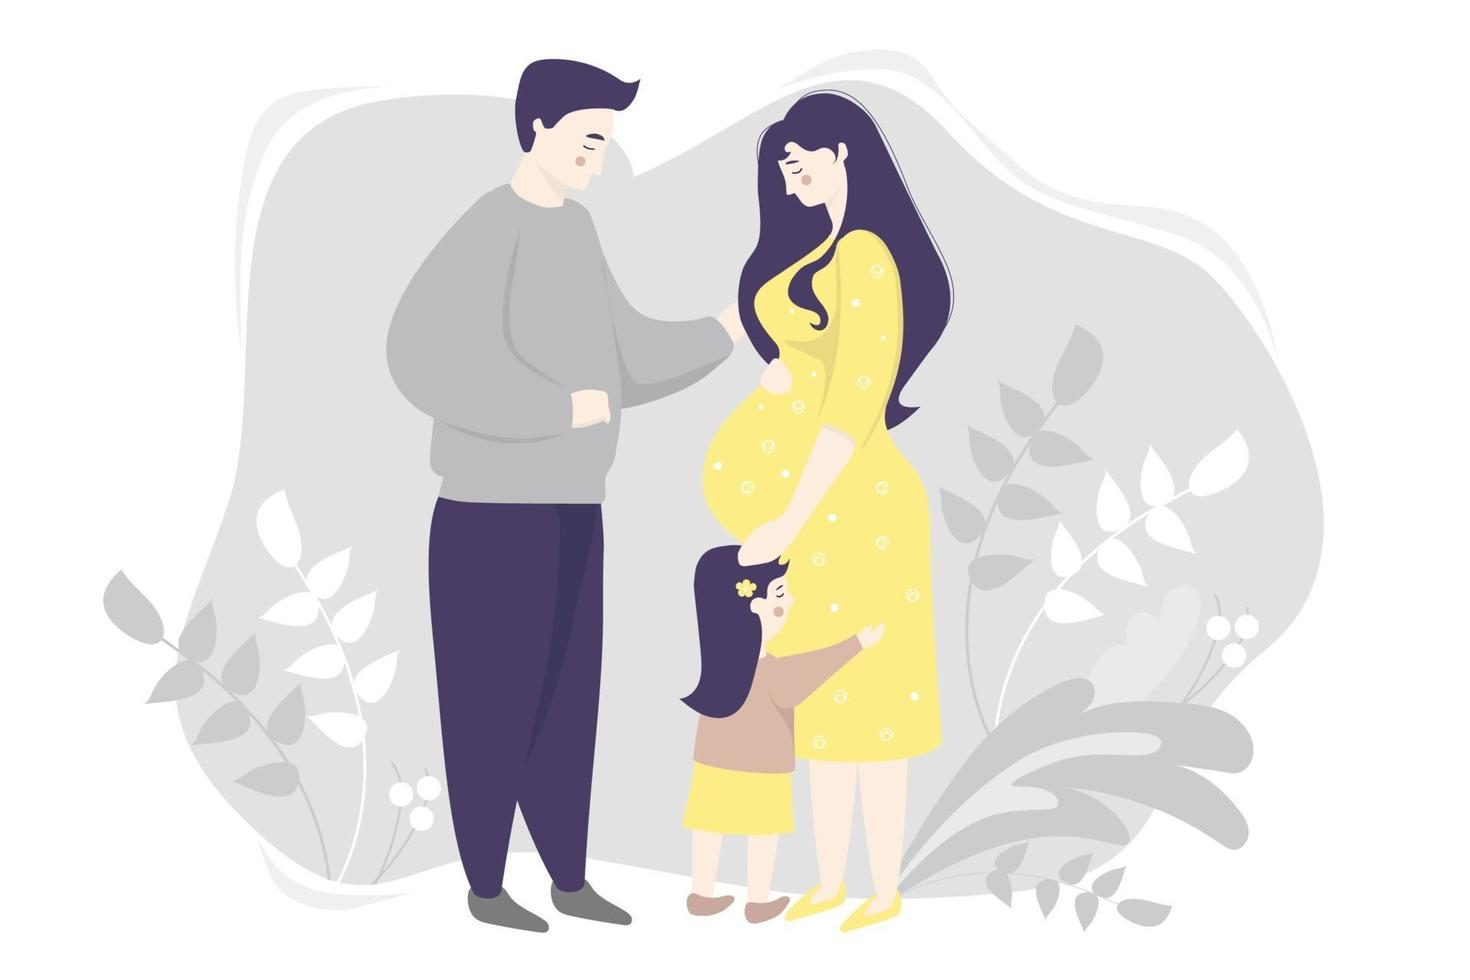 maternidad. vector de familia plana - feliz mujer embarazada con un vestido amarillo, abraza suavemente su vientre. junto a ella hay una hijita y un esposo sobre un fondo gris con plantas. ilustración vectorial